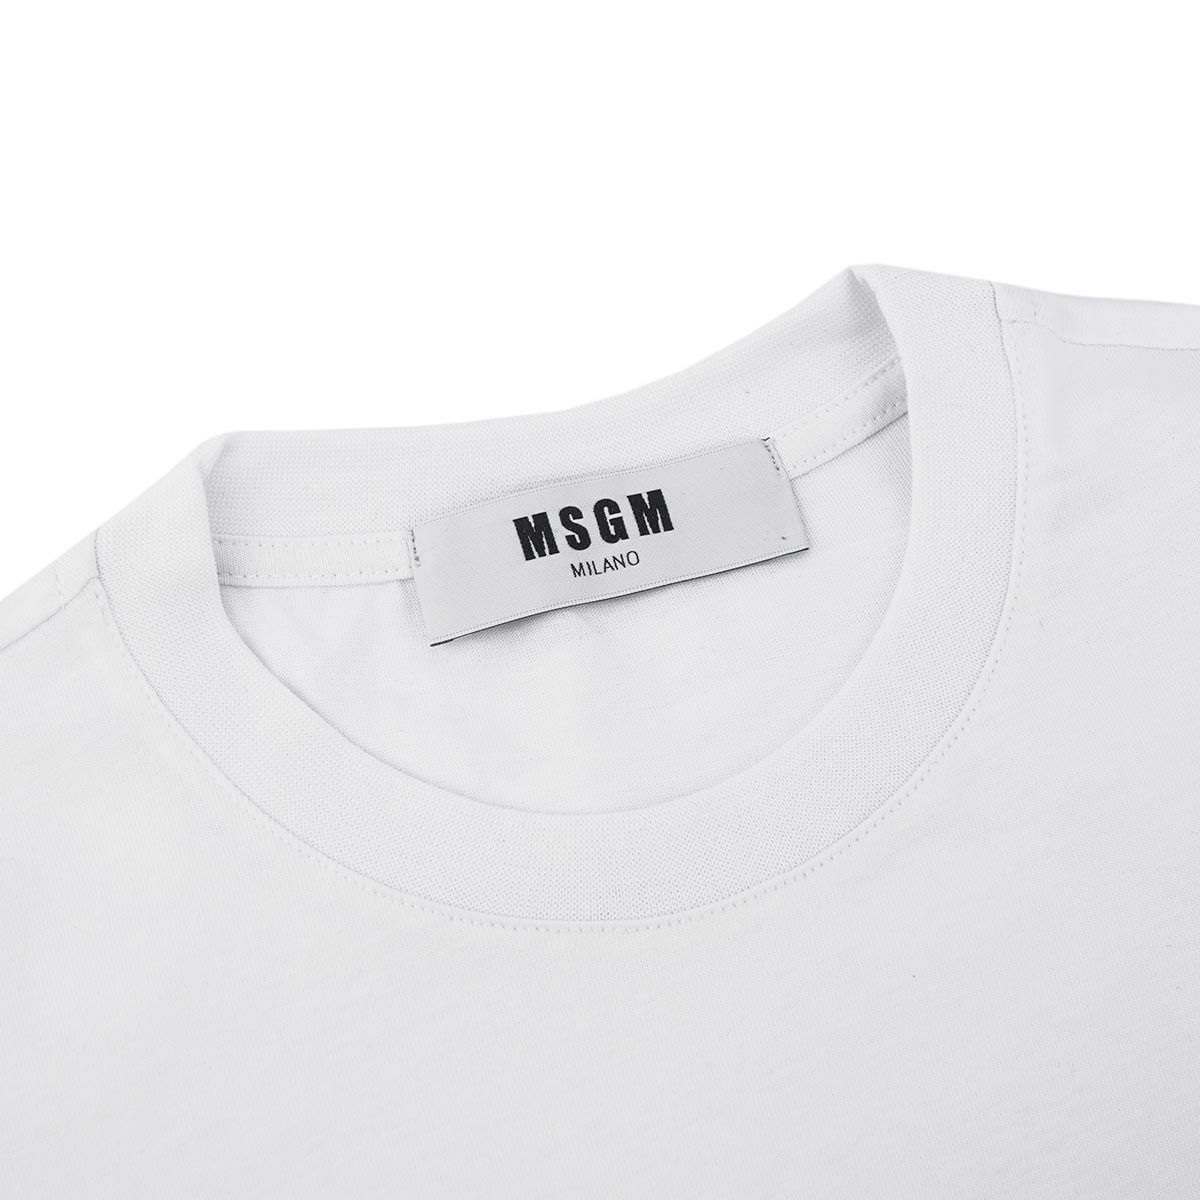 Tシャツ MSGM ロゴプリント MDM95 2641 レディース ホワイト ...